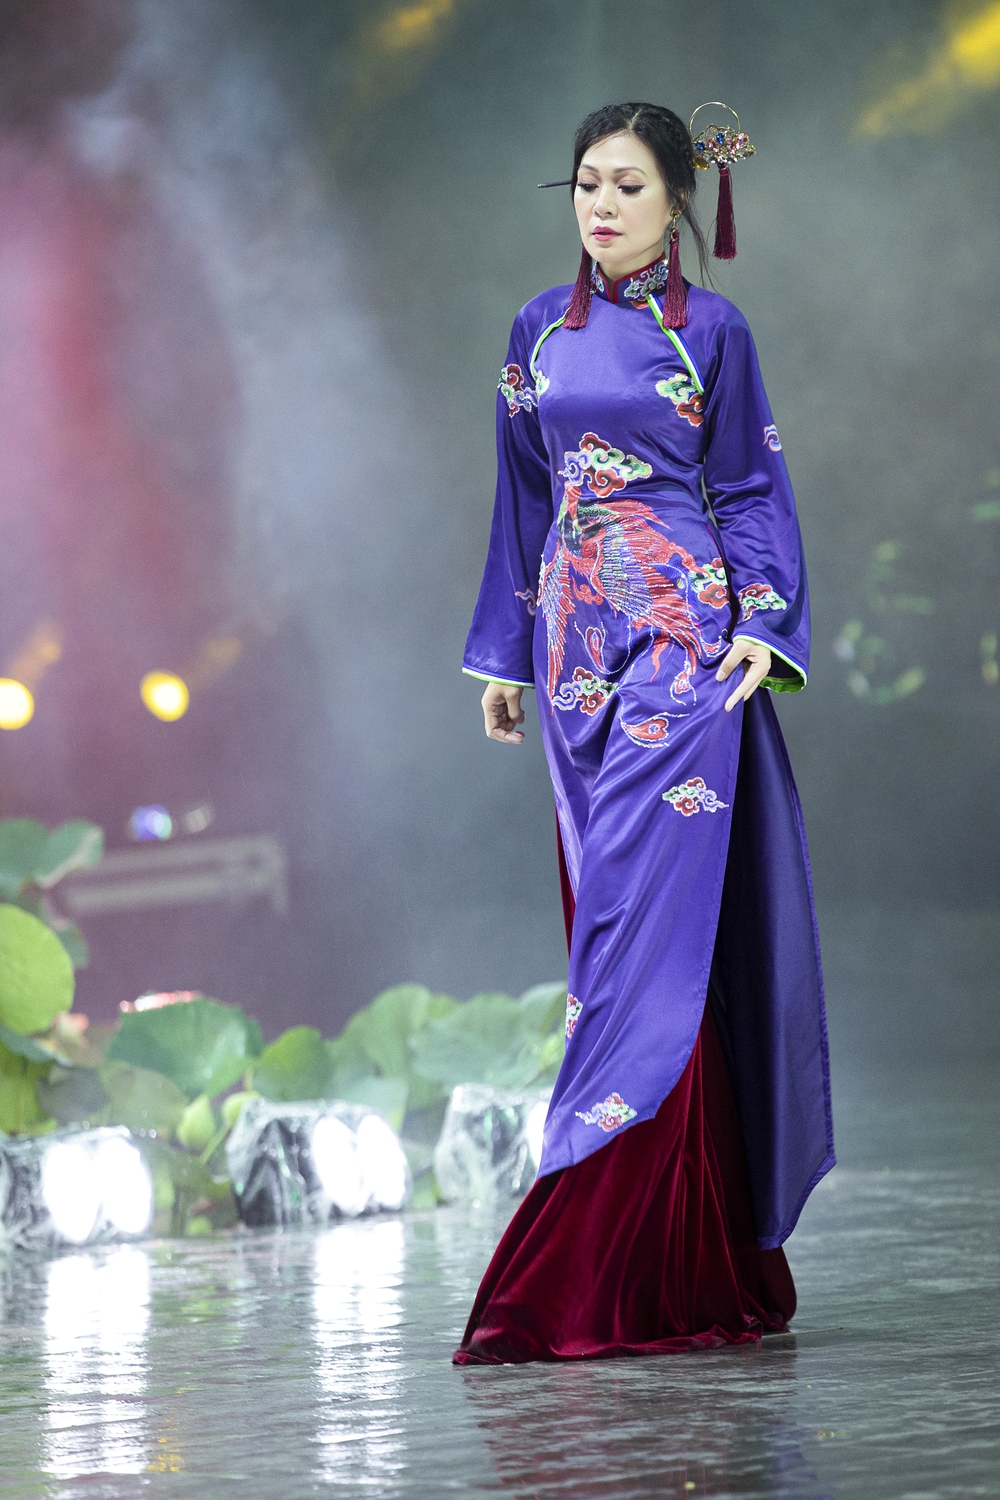 Á hậu Lý Kim Thảo xuất hiện xinh đẹp, diễn mở màn cho BST của NTK Nhật Dũng - Ảnh 8.